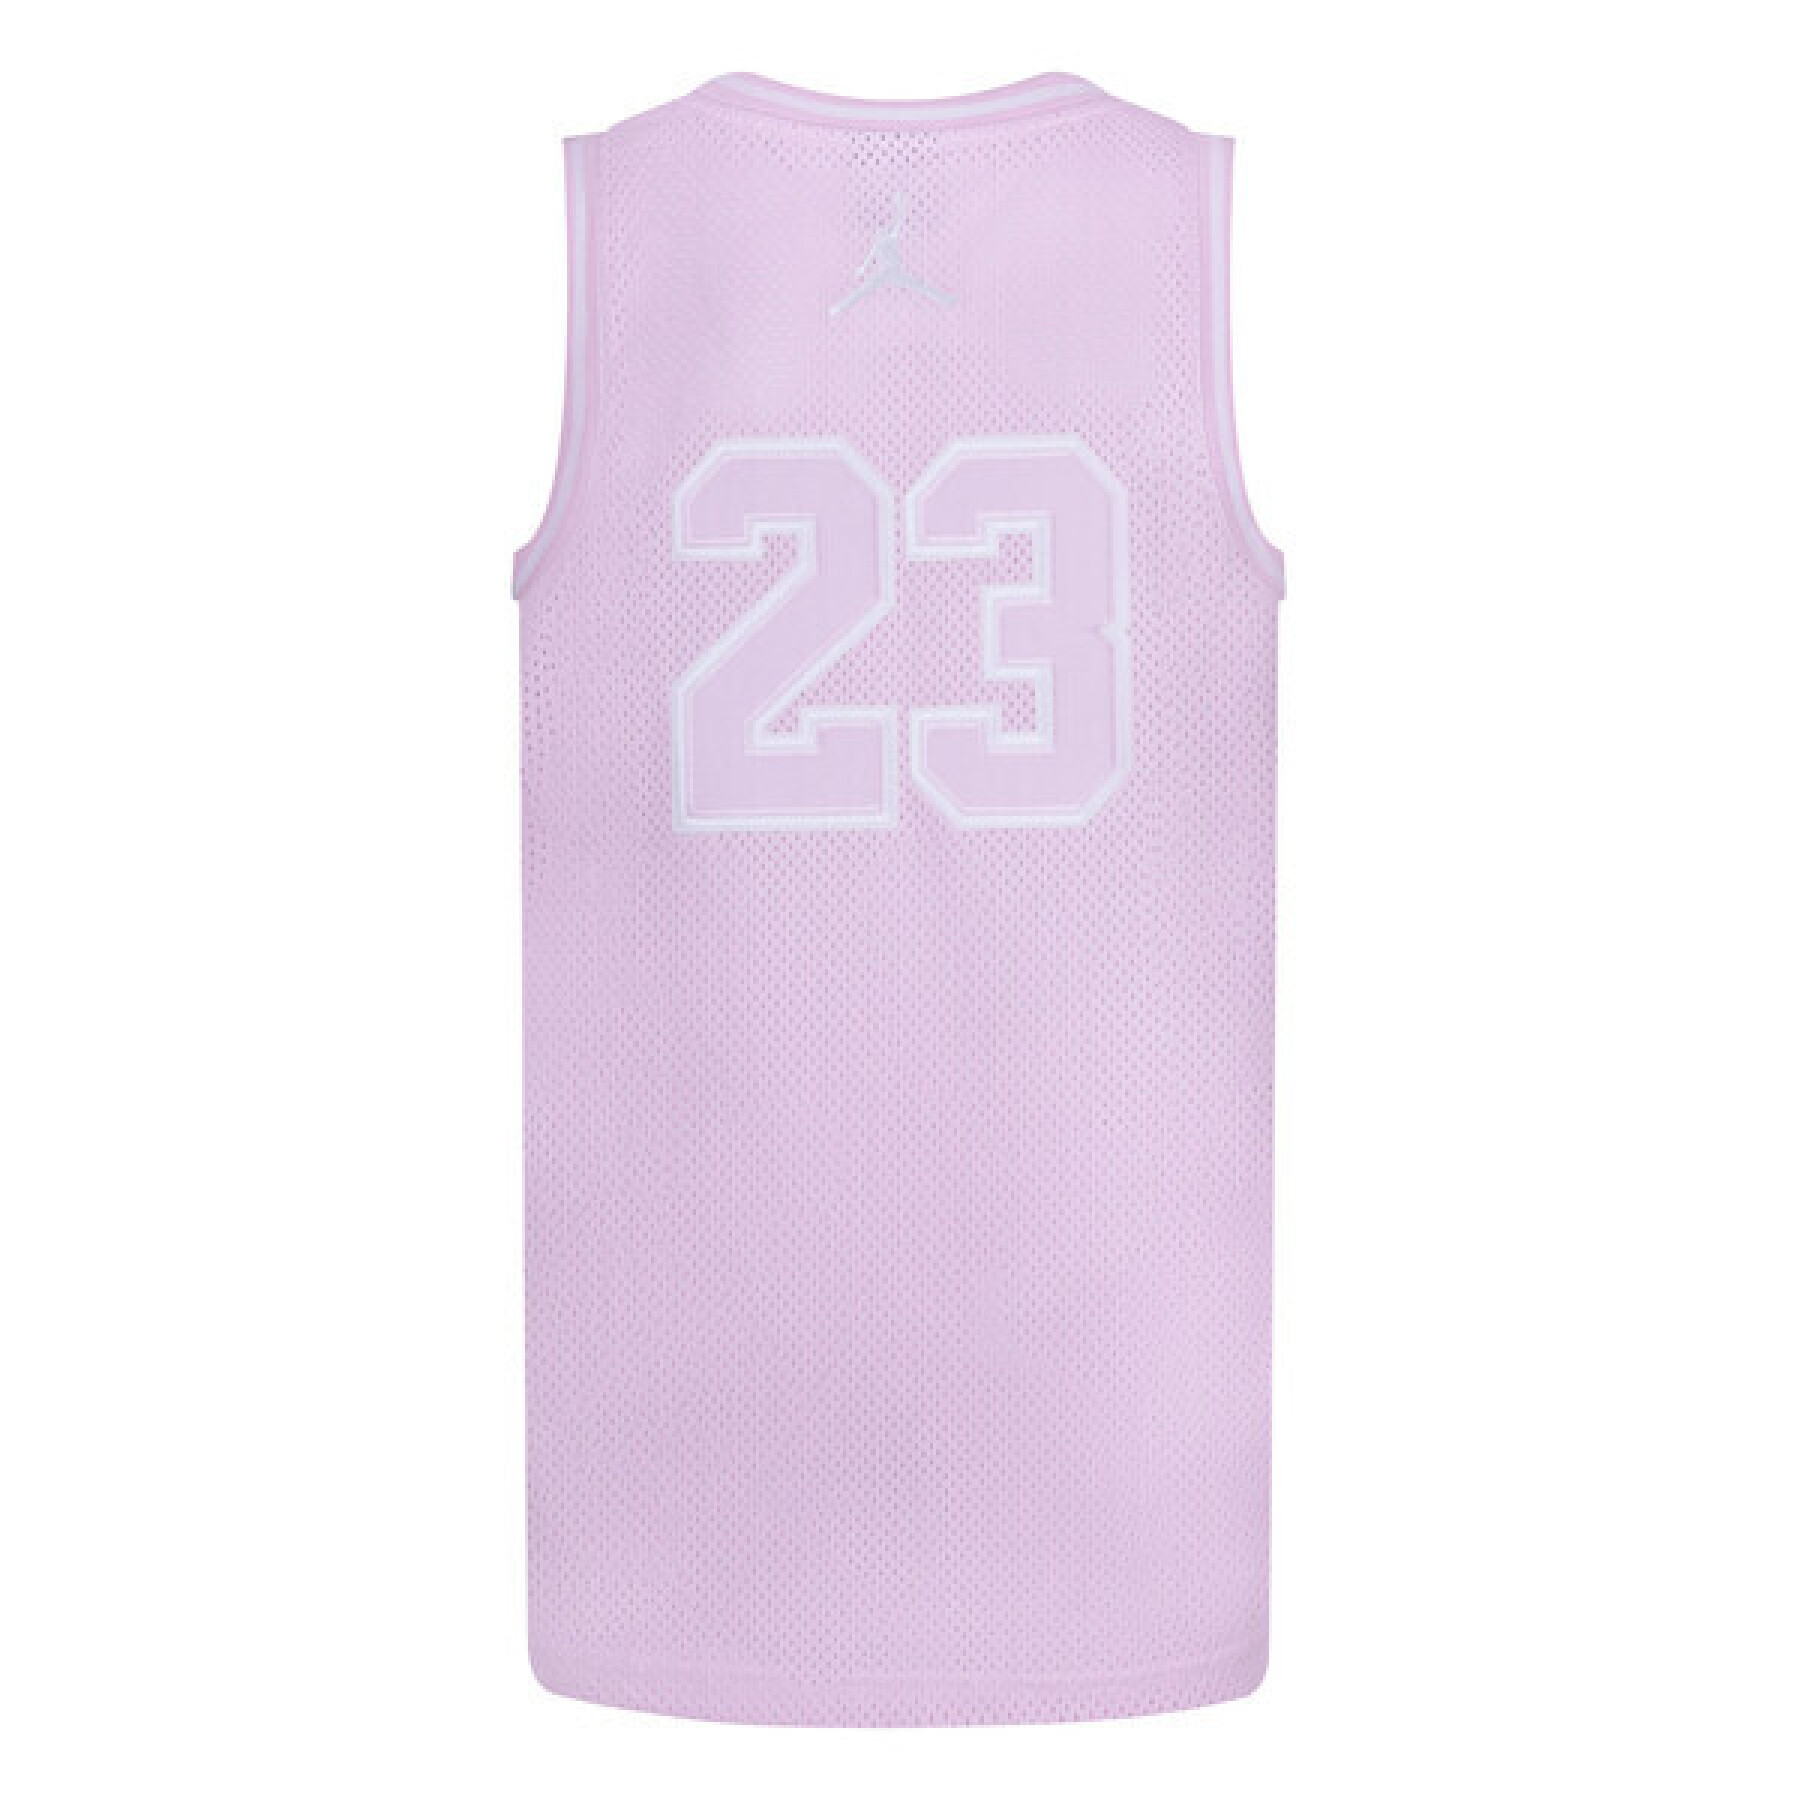 Children's jersey Jordan 23